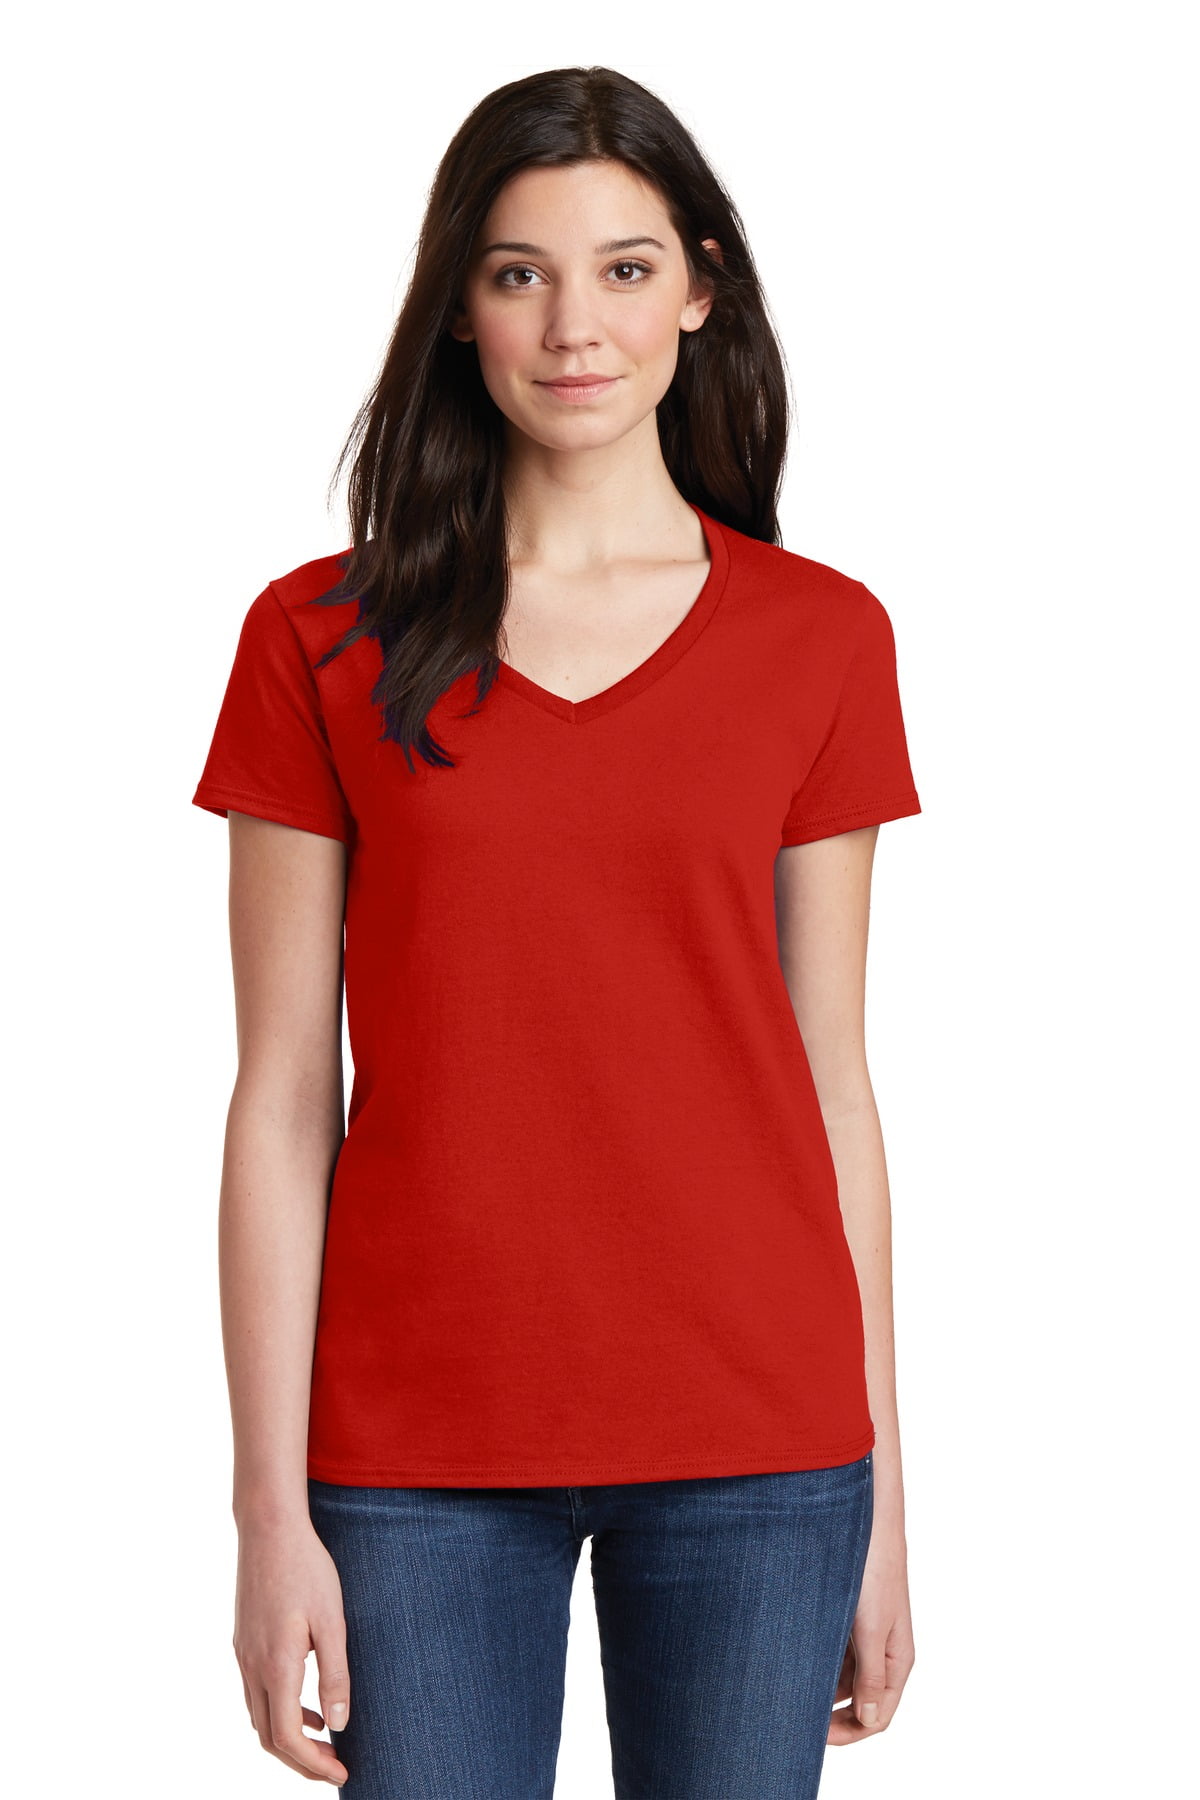 ladies red t shirt